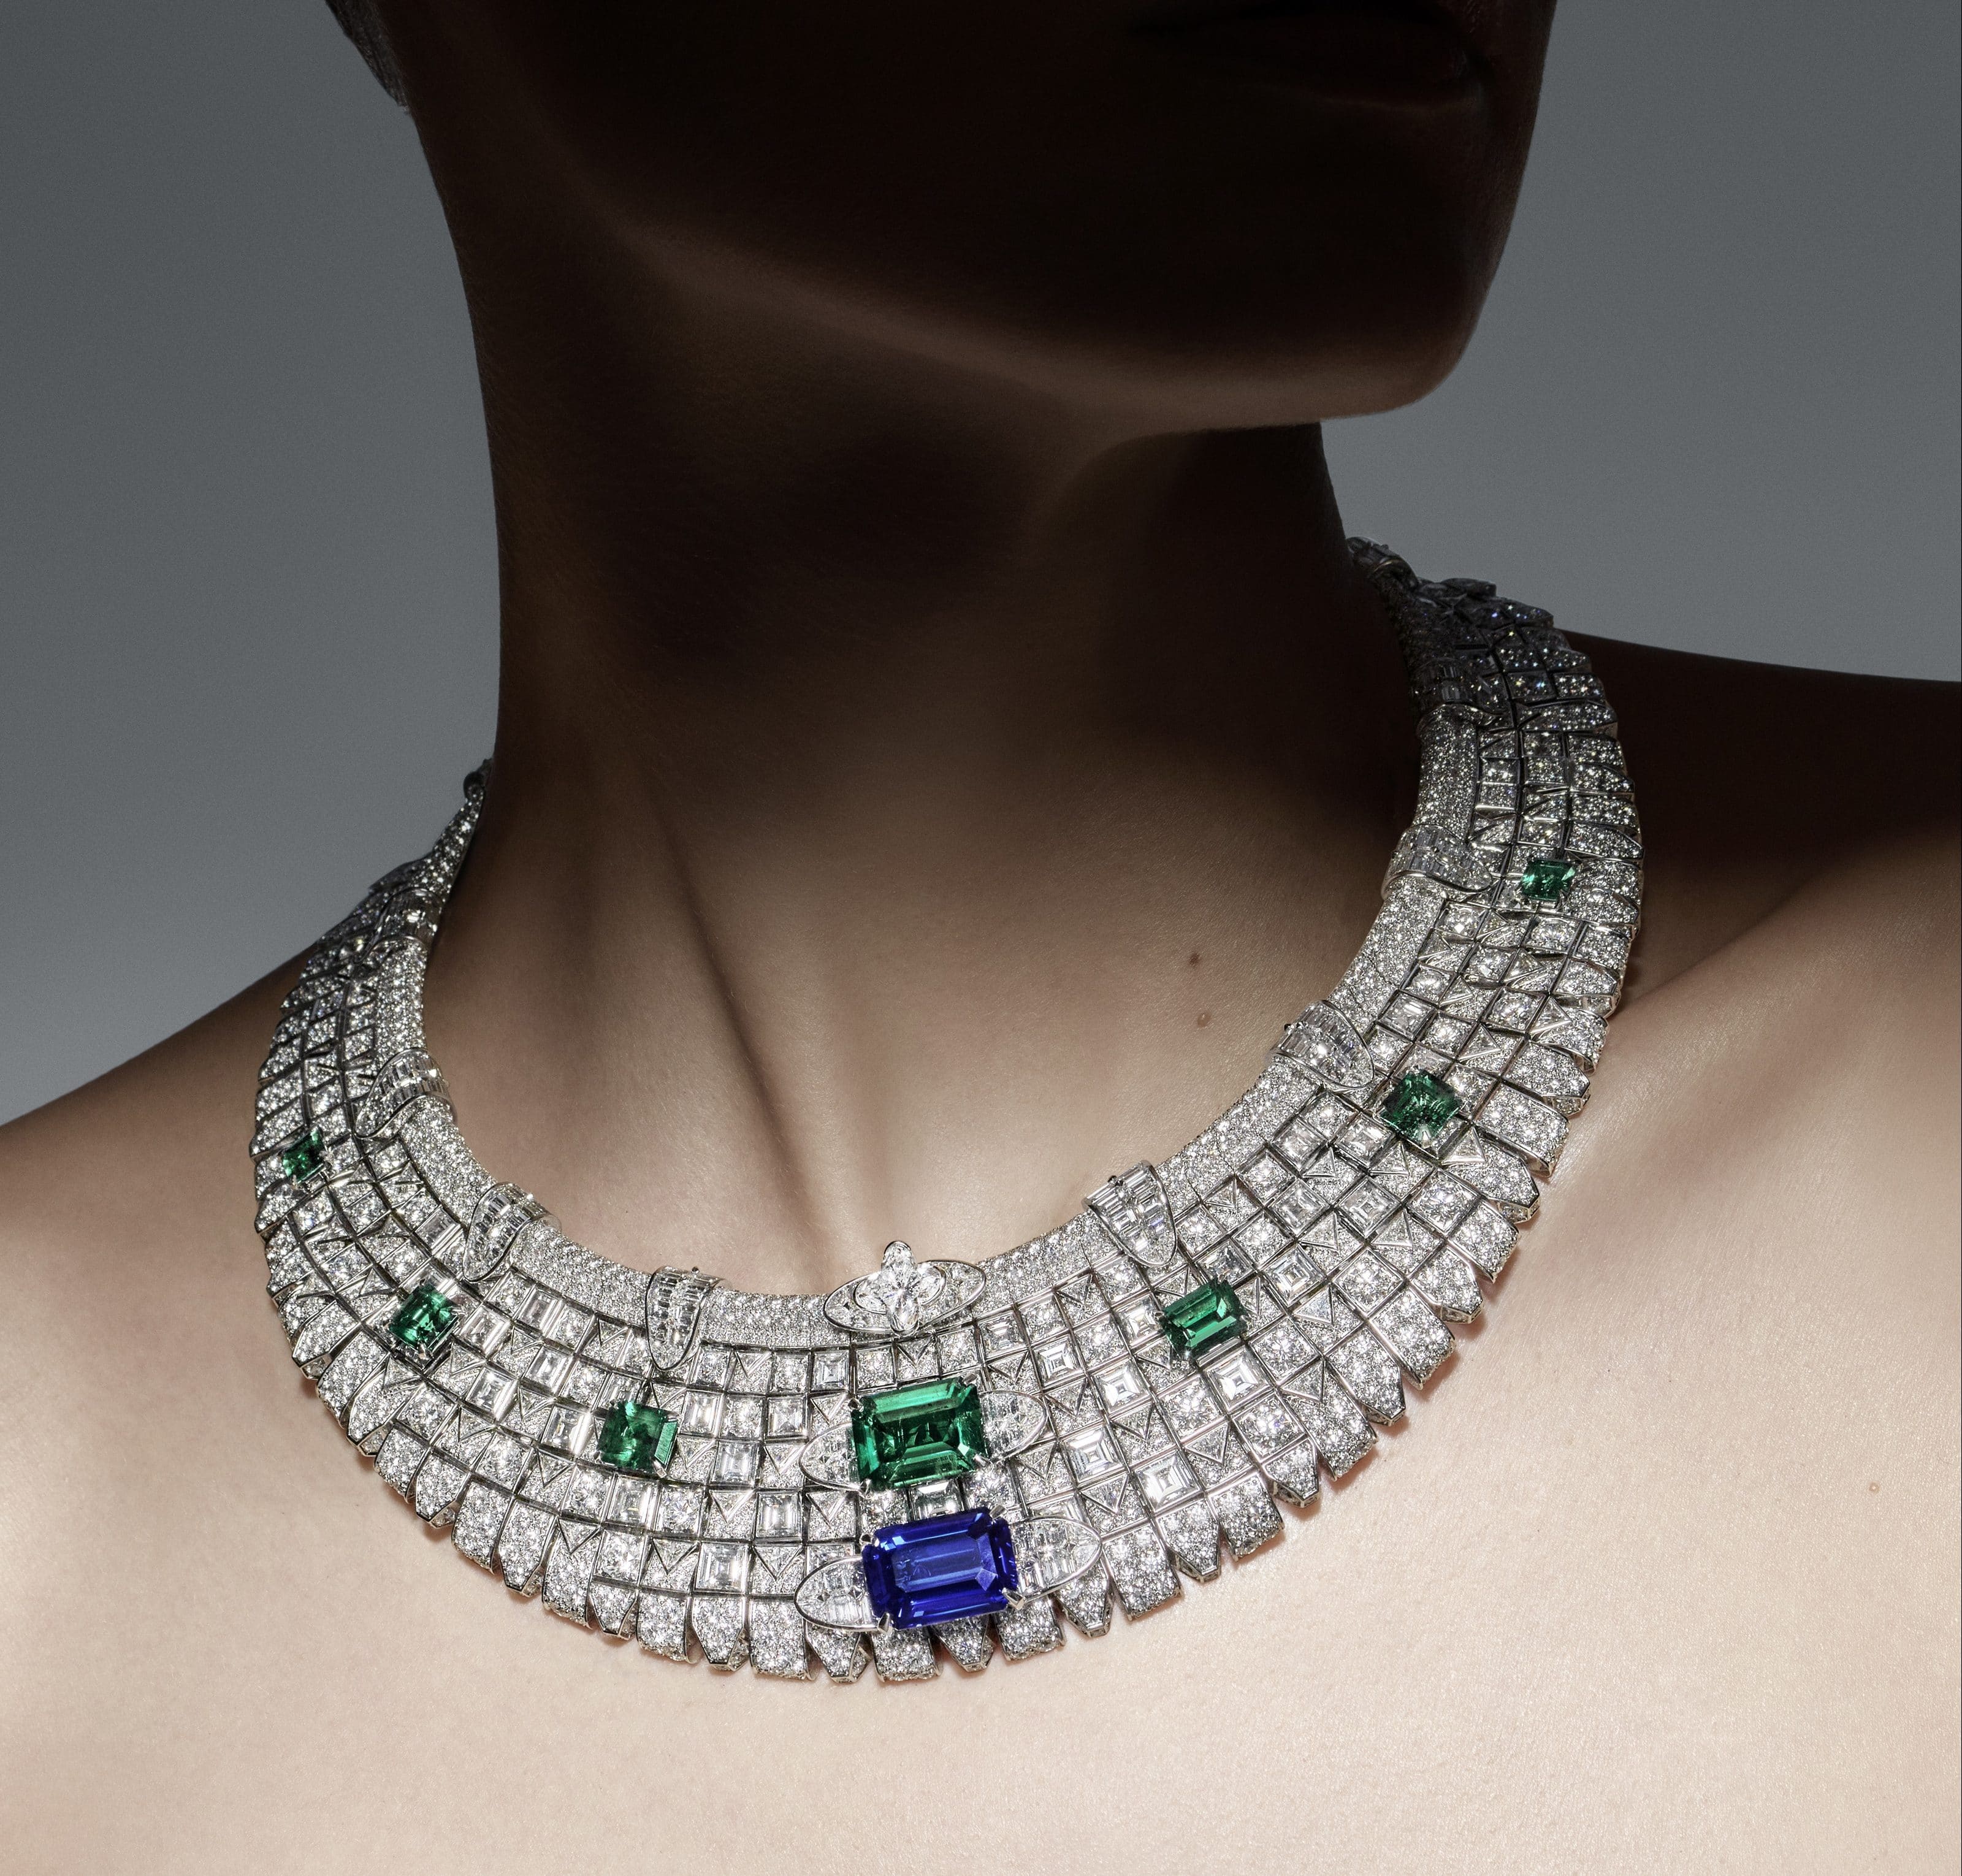 La Nouvelle Collection de Haute Joaillerie LV Diamonds de Louis Vuitton  Donne aux Classiques une Touche de Modernité - Only Natural Diamonds